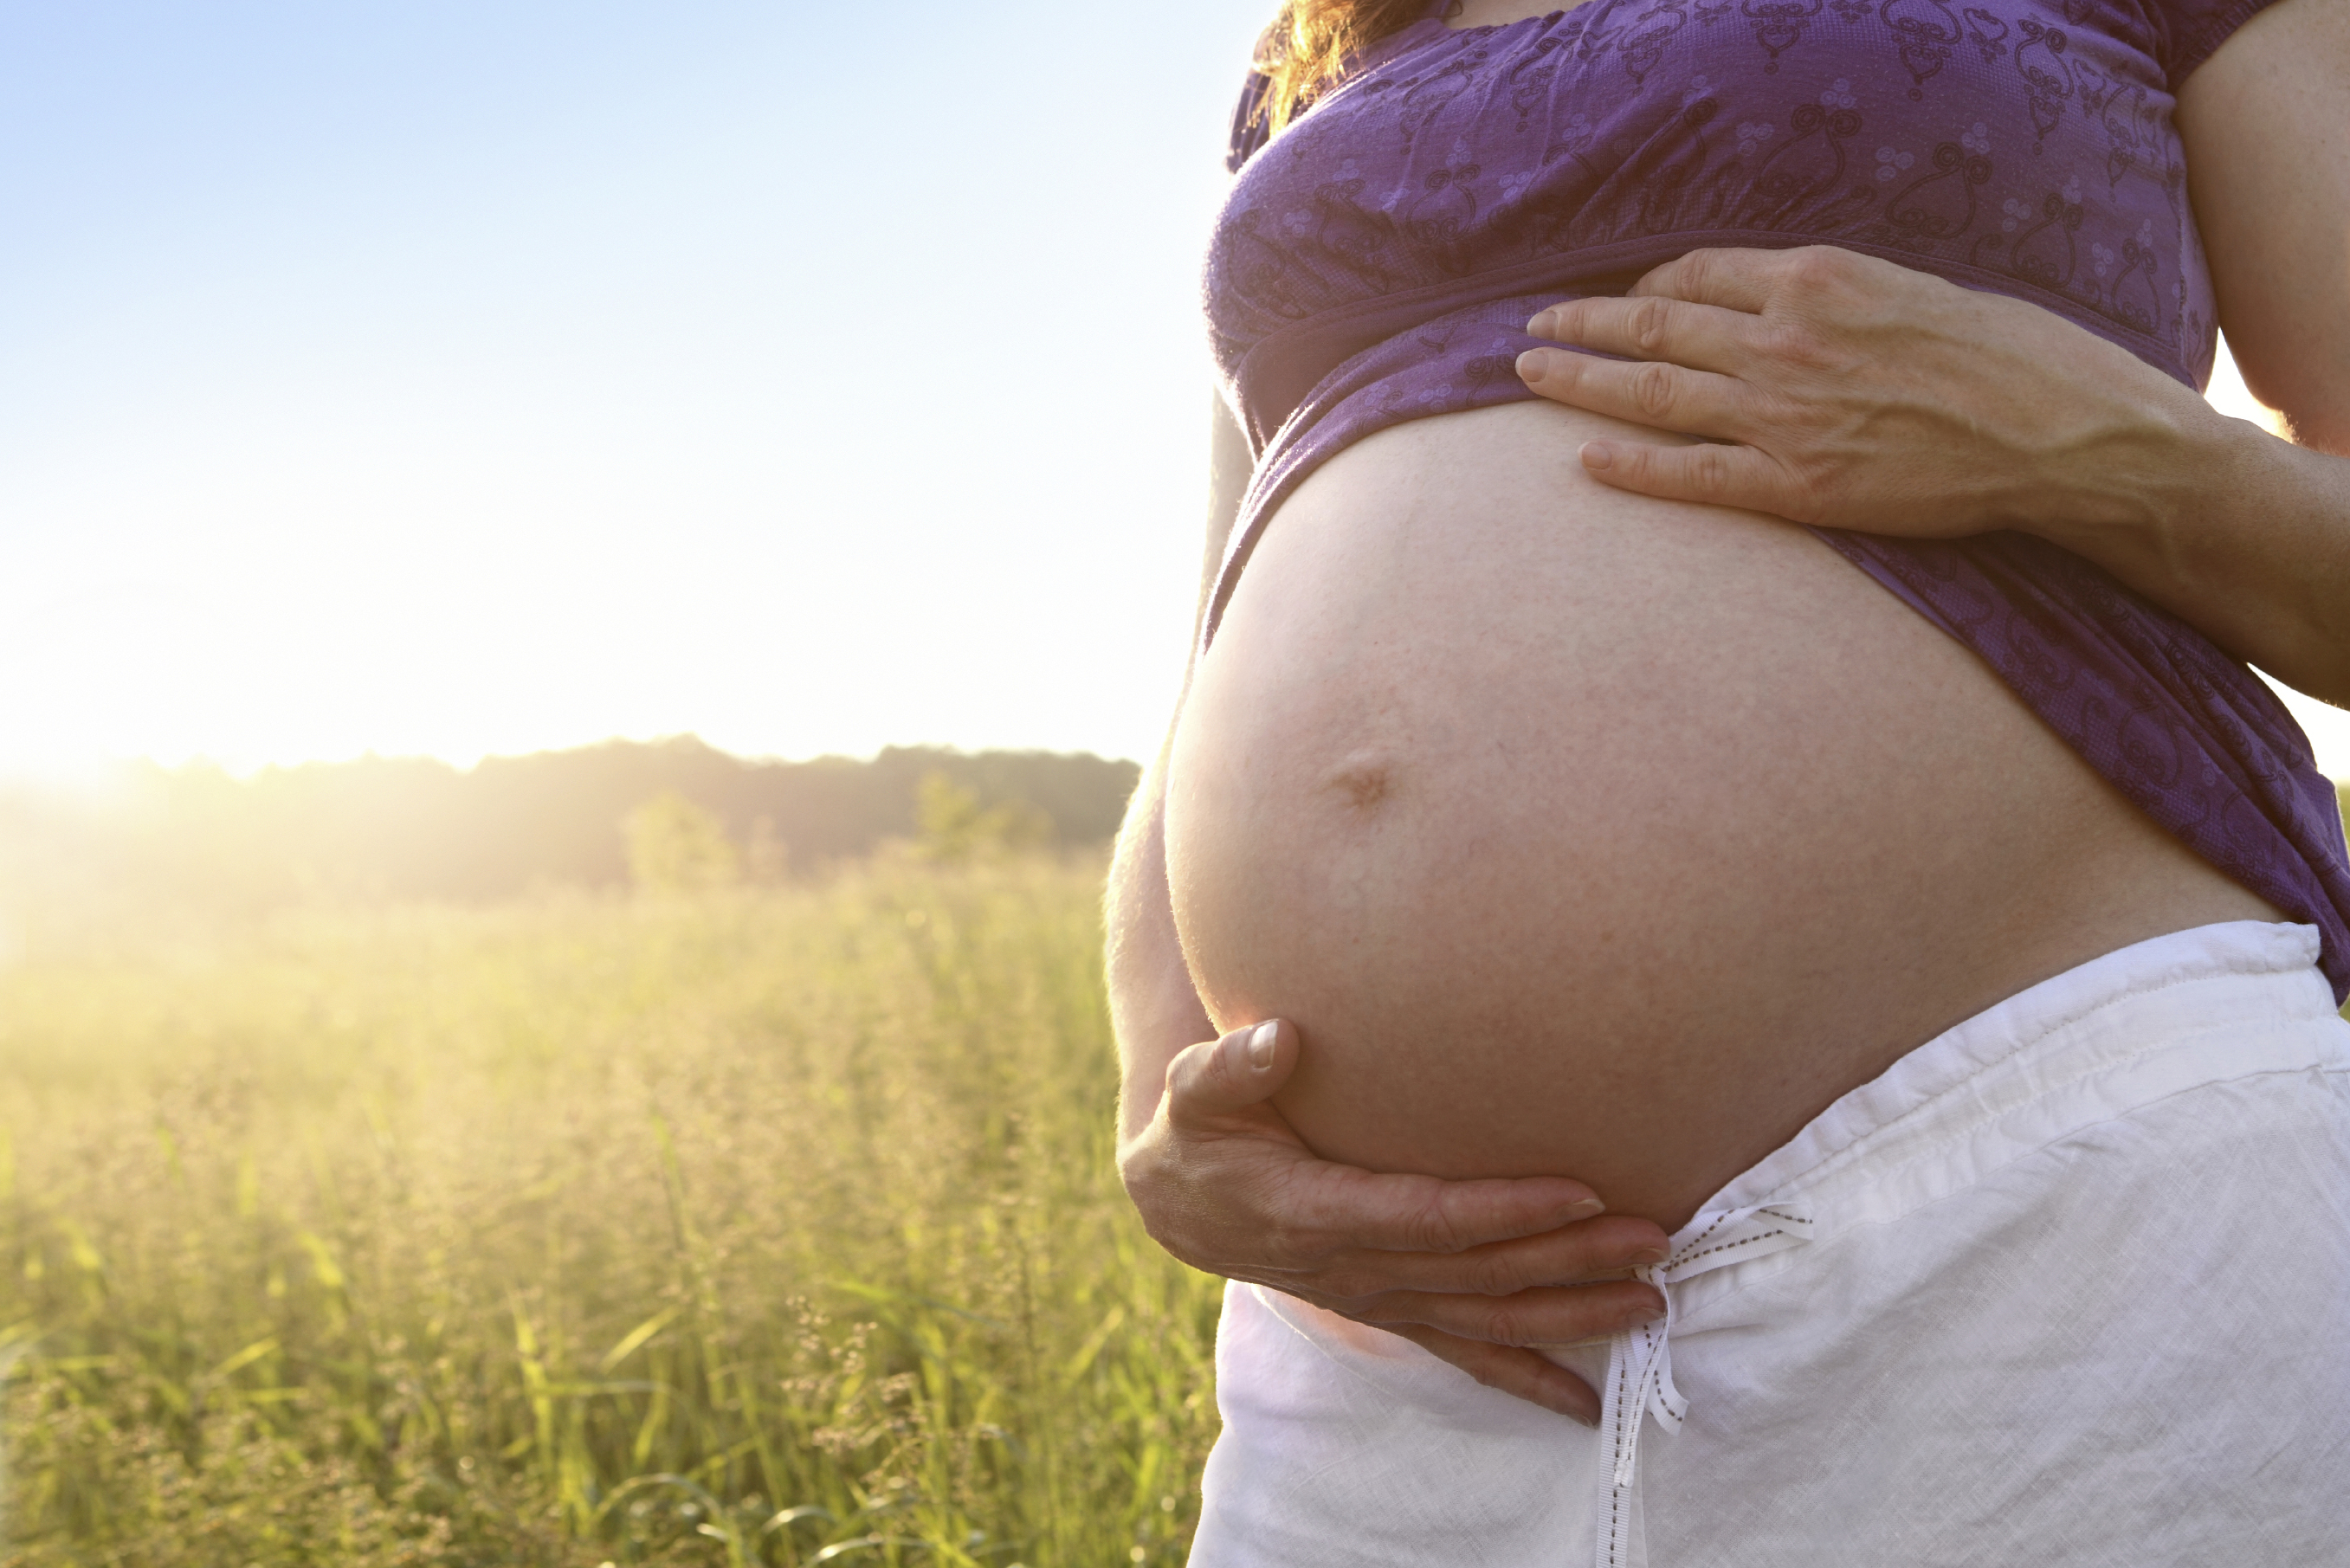 Trapianto di utero, una risposta alla sterilità di molte donne